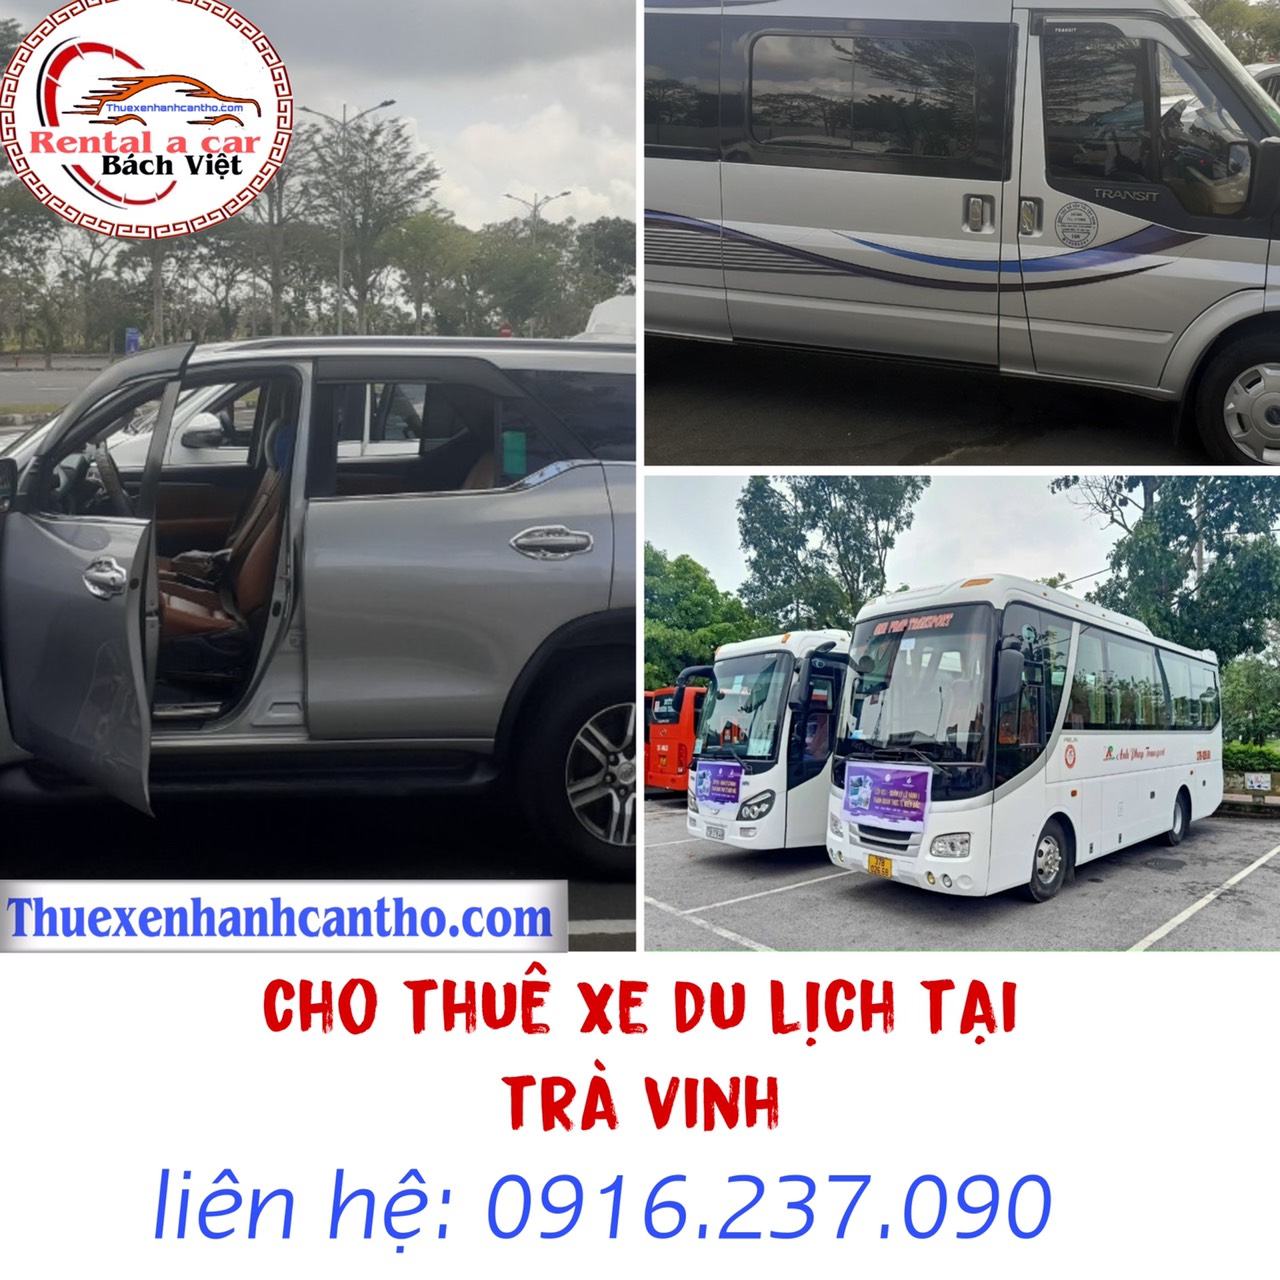 Cho thuê xe du lịch tại Trà Vinh